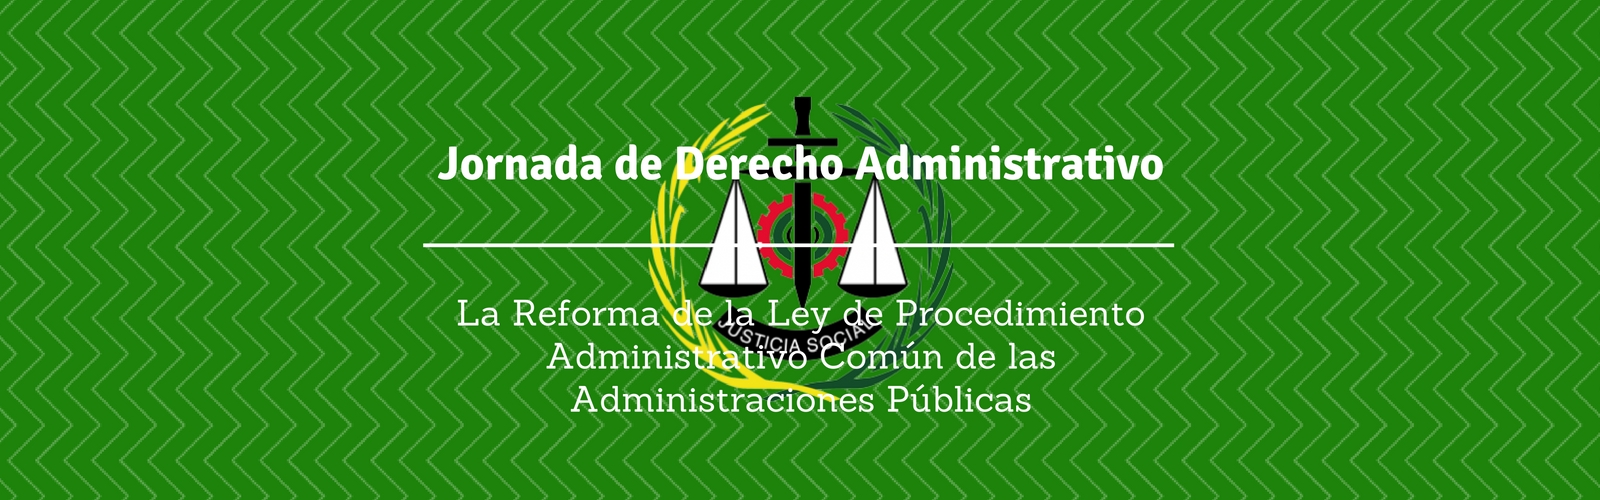 Jornada de Derecho Administrativo: La Reforma de la Ley de Procedimiento Administrativo Común de las Administraciones Públicas